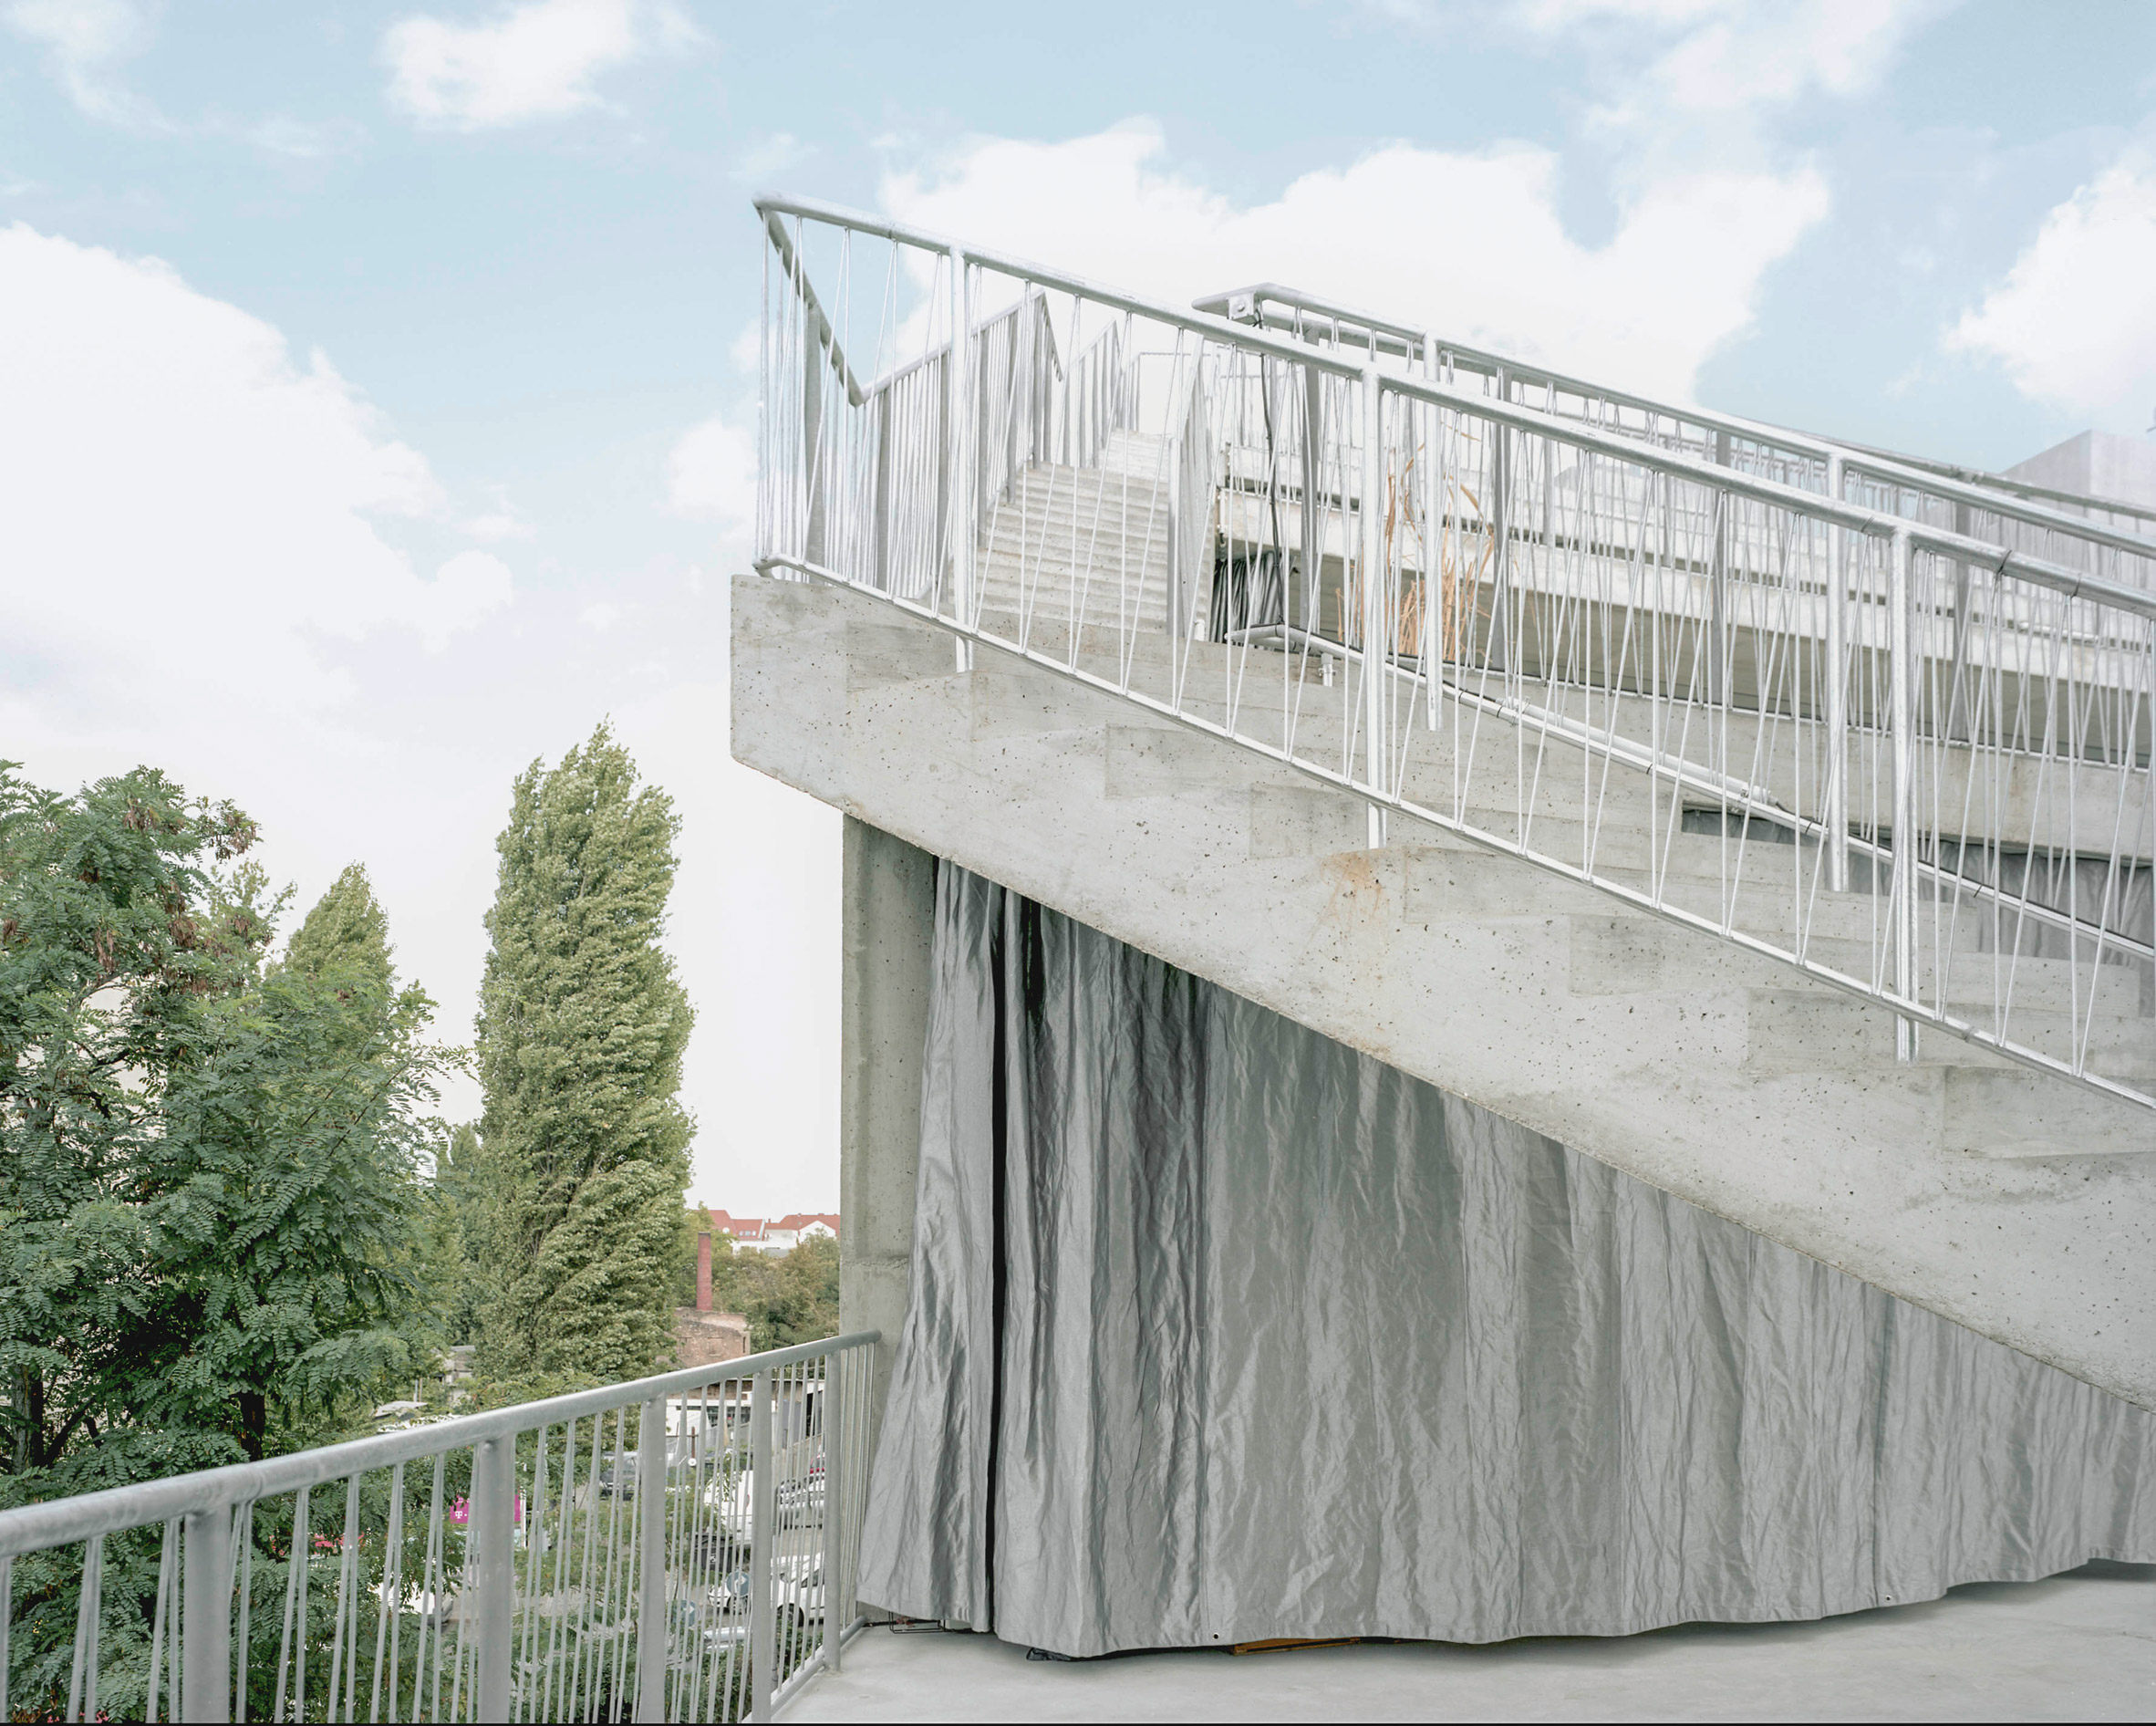 Terrassenhaus by Brandlhuber + Emde and Burlon + Muck Petzet Architekten